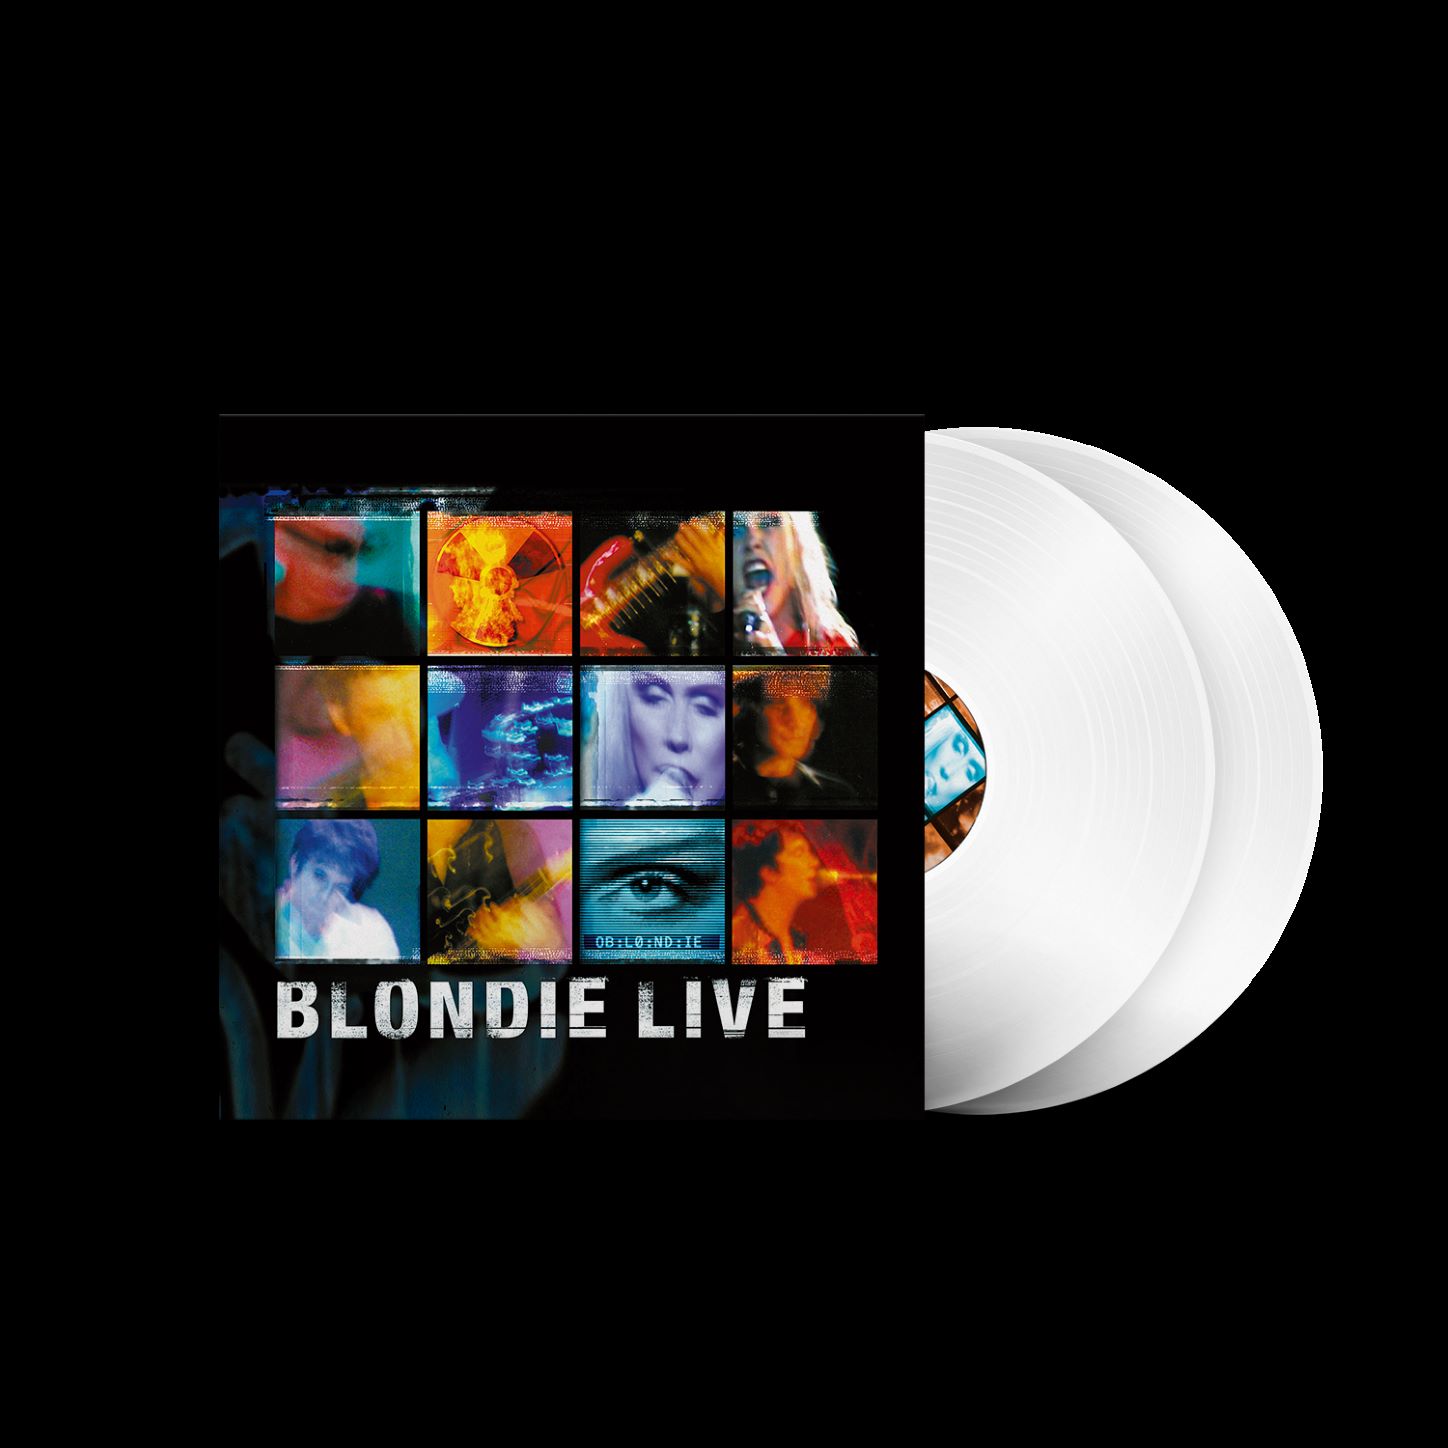 Blondie - Blondie Live (Limited Edition White Vinyl)